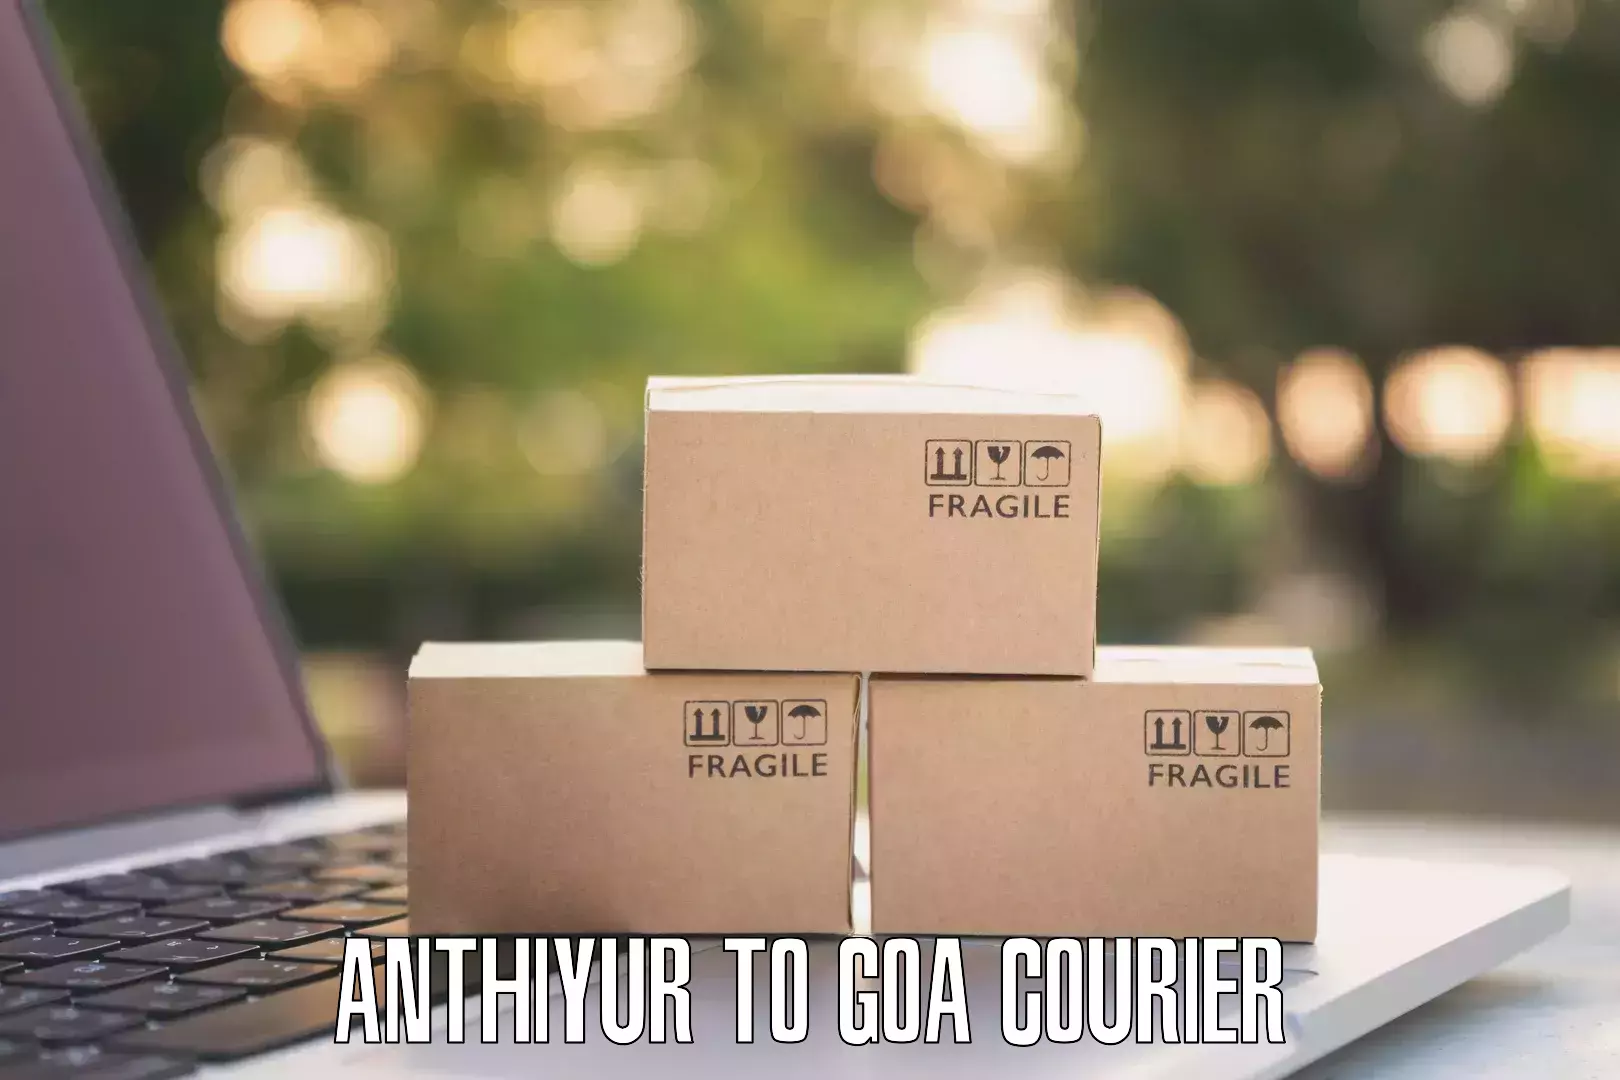 Urban courier service Anthiyur to Goa